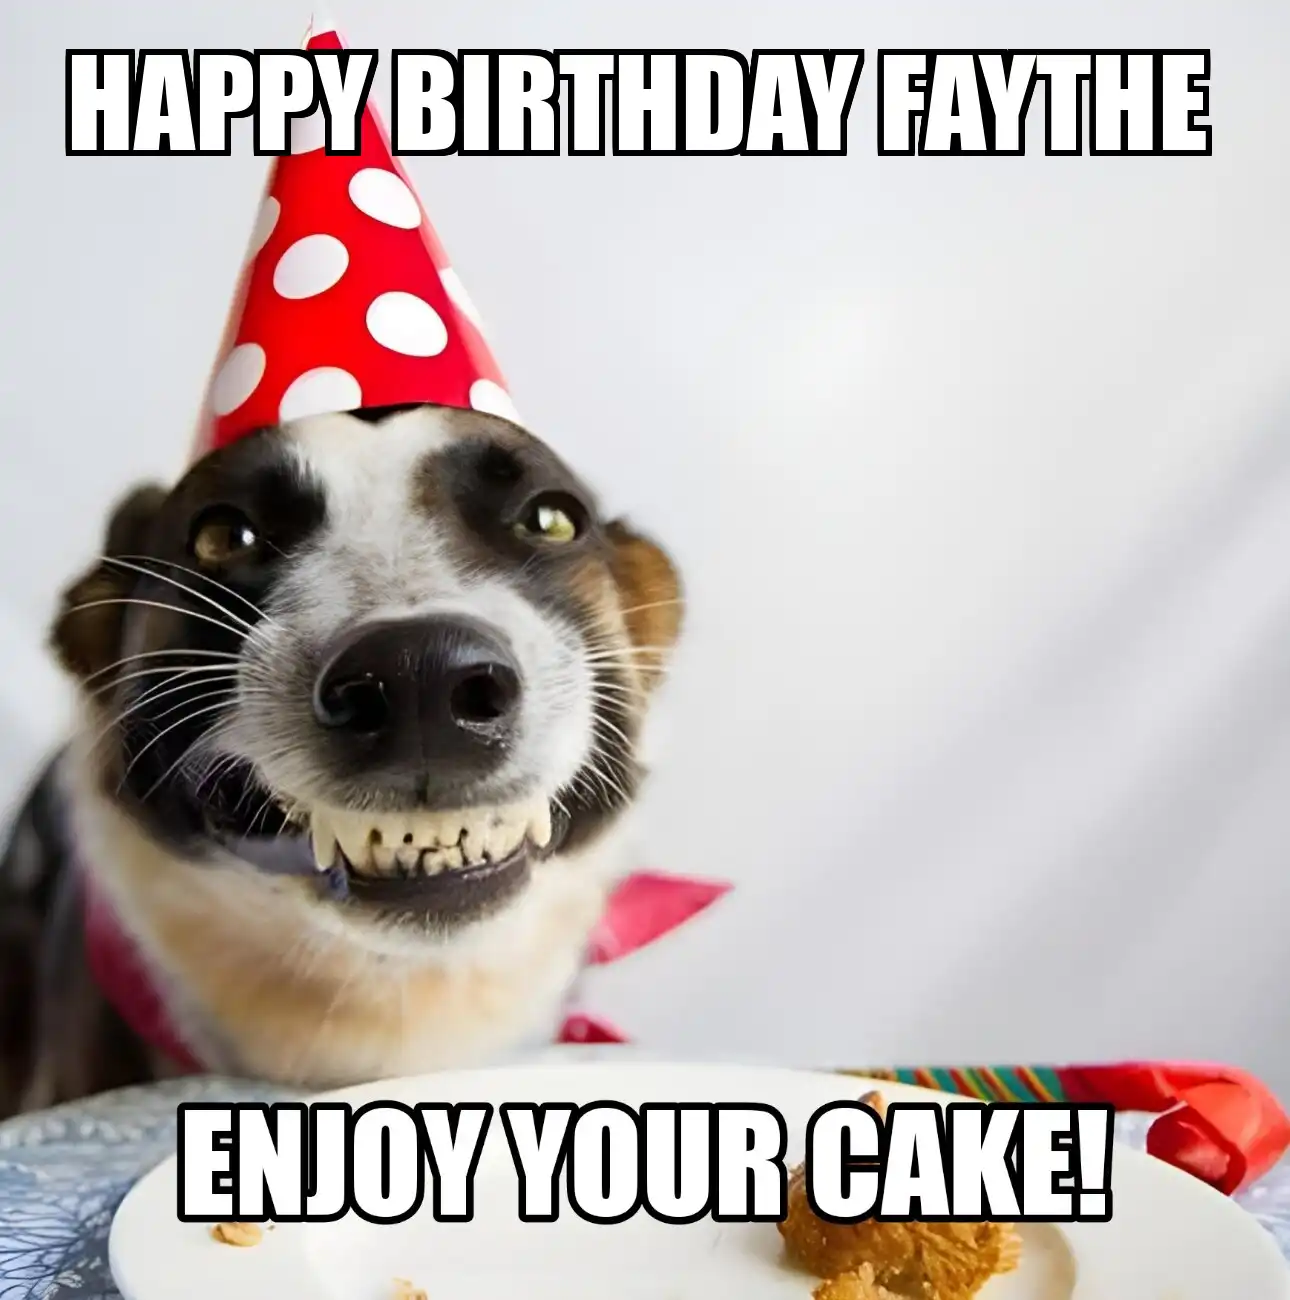 Happy Birthday Faythe Enjoy Your Cake Dog Meme